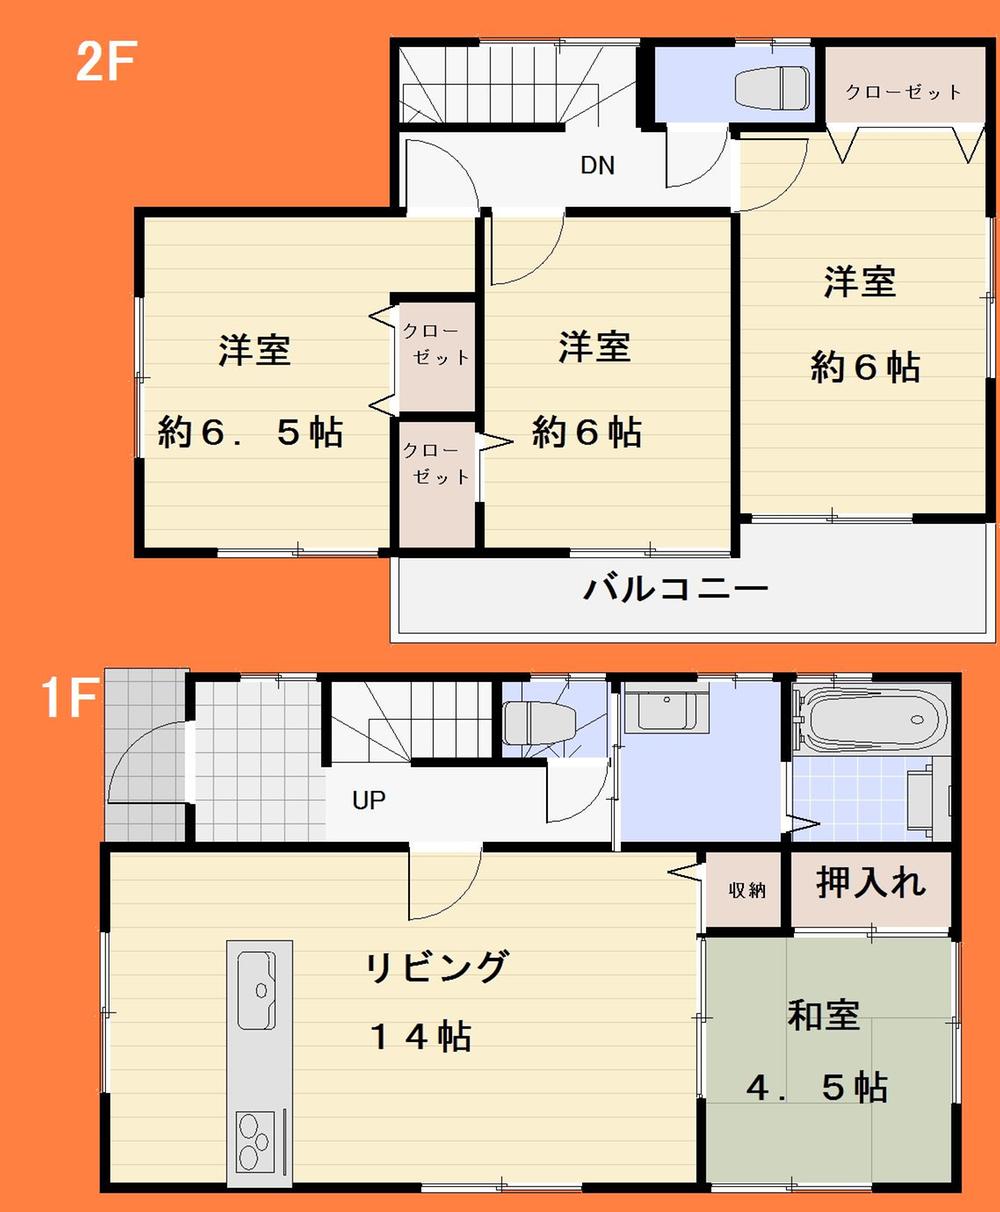 Floor plan. 32,800,000 yen, 4LDK, Land area 161.03 sq m , Building area 96.04 sq m floor plan